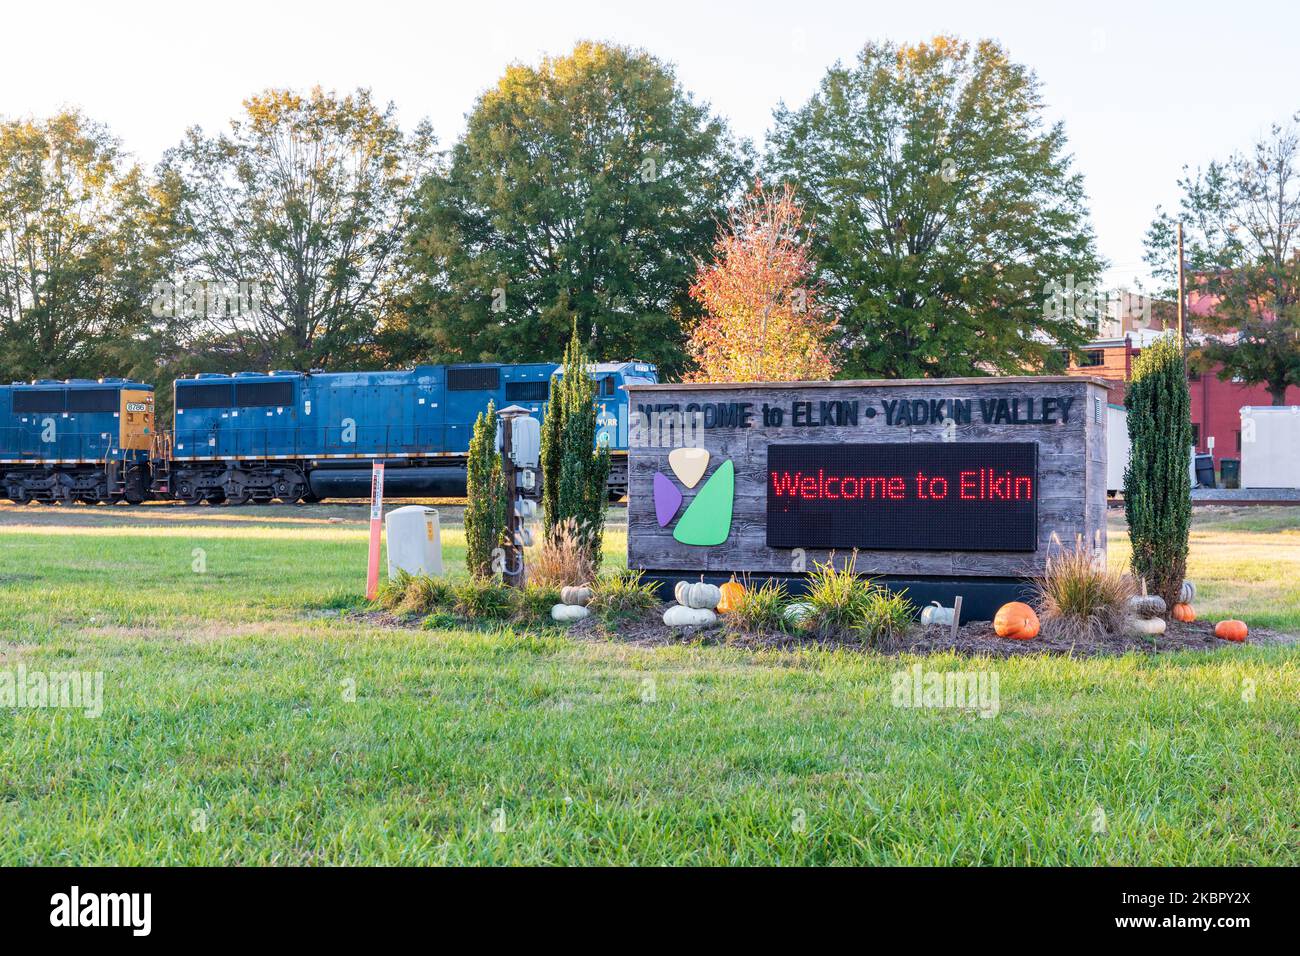 ELKIN, NORTH CAROLINA, USA-14 OTTOBRE 2022: Cartello del monumento-Benvenuti a Elkin, Yadkin Valley, con locomotiva del treno dietro. Foto Stock